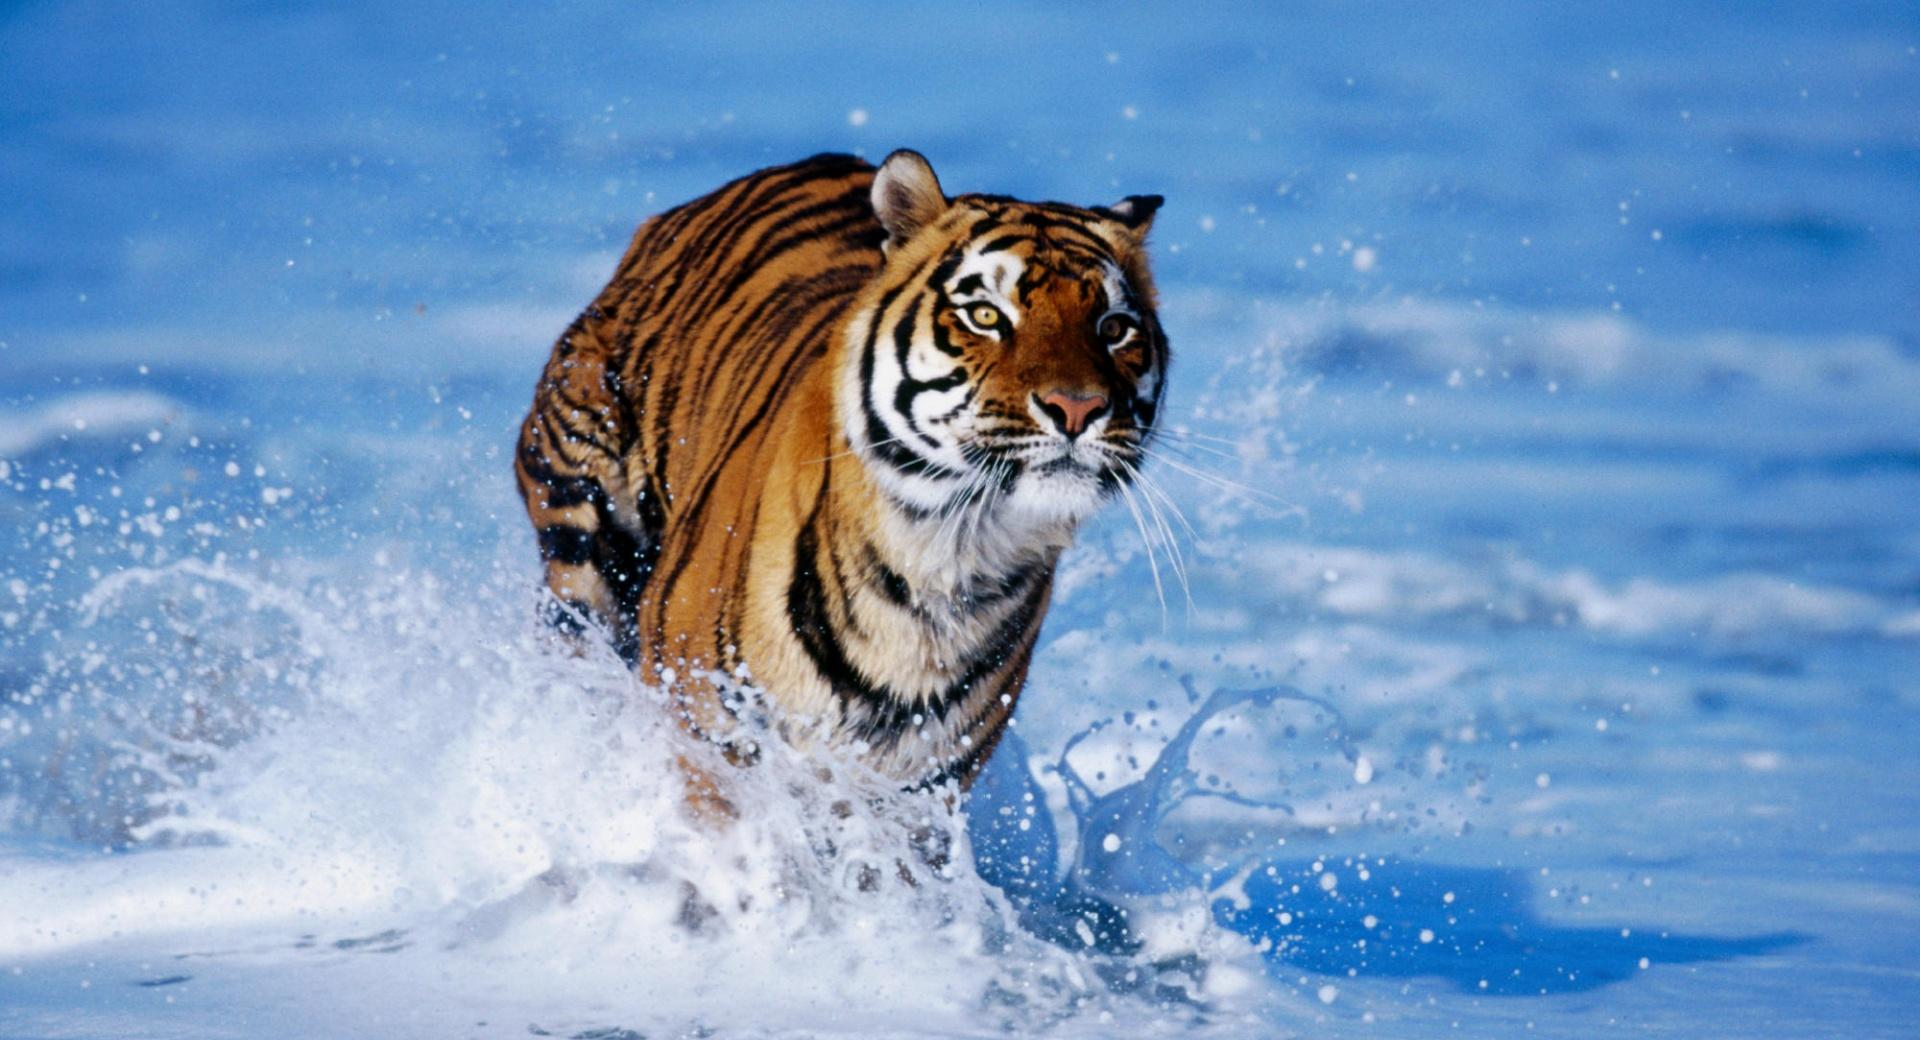 Bengal Tiger Panthera Tigris Tigris at 640 x 960 iPhone 4 size wallpapers HD quality